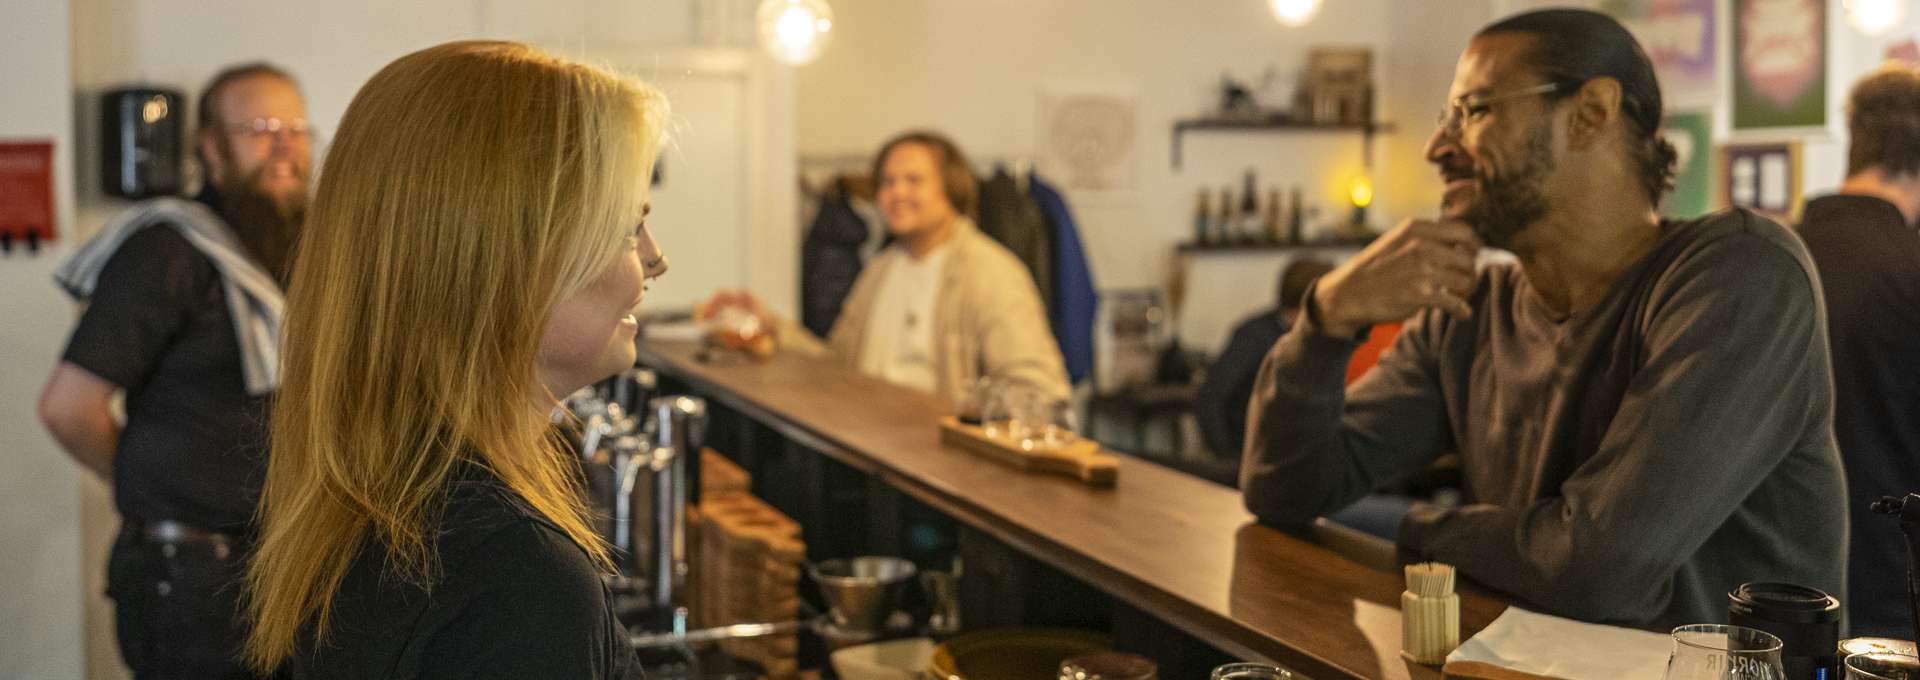 En bardisk där en man pratar med en kvinnlig bartender.